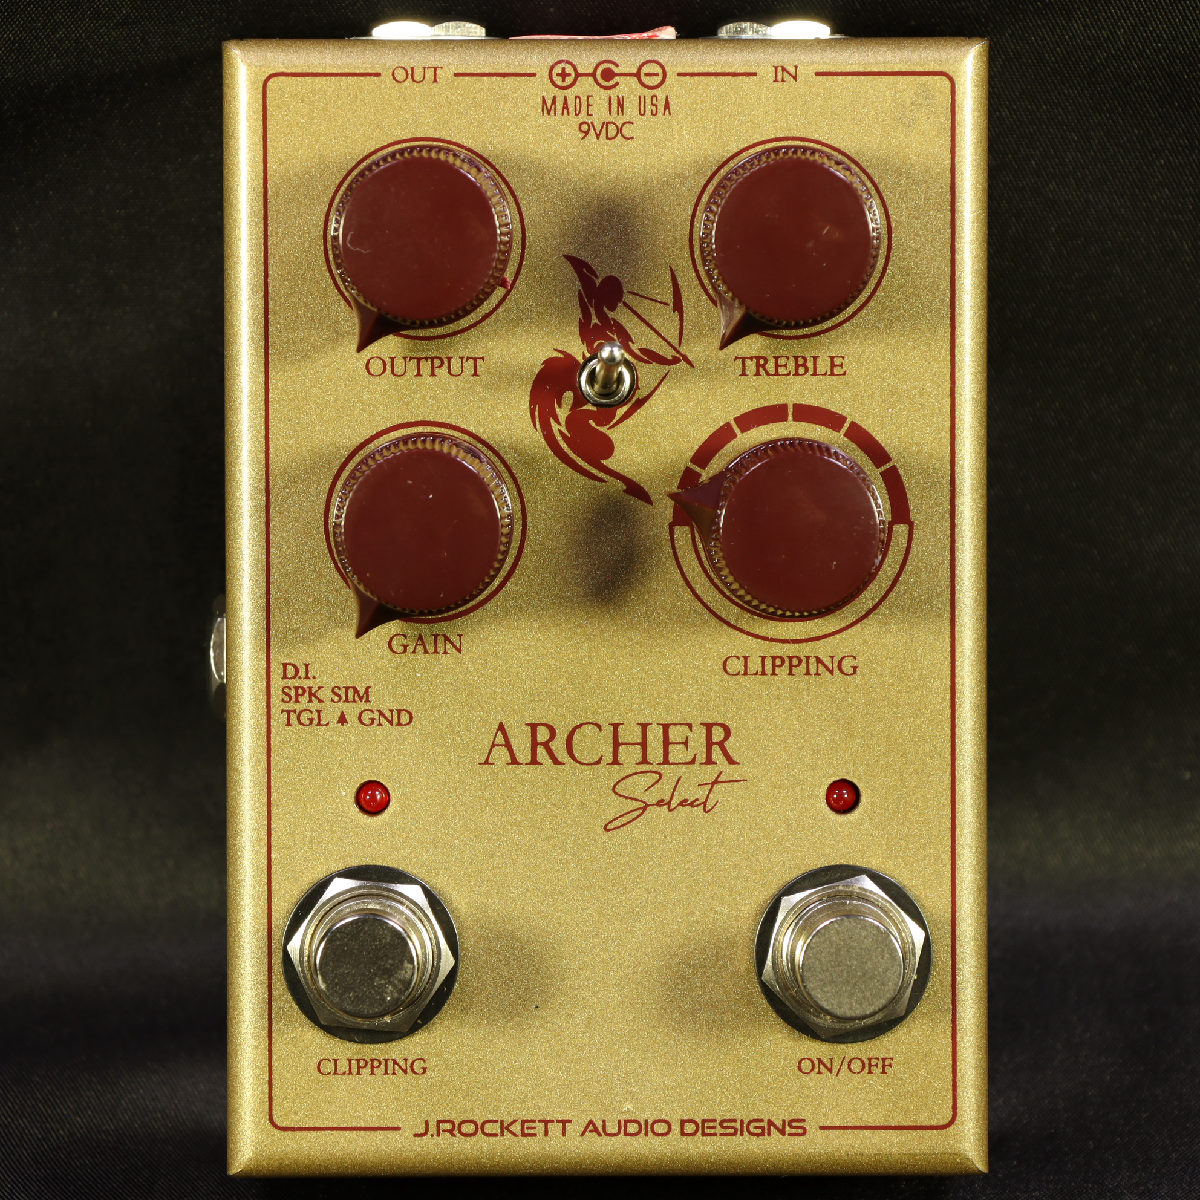 J. Rockett Audio Designs / Archer Select オーバードライブ ジェイ・ロケット・オーディオ・デザインズ